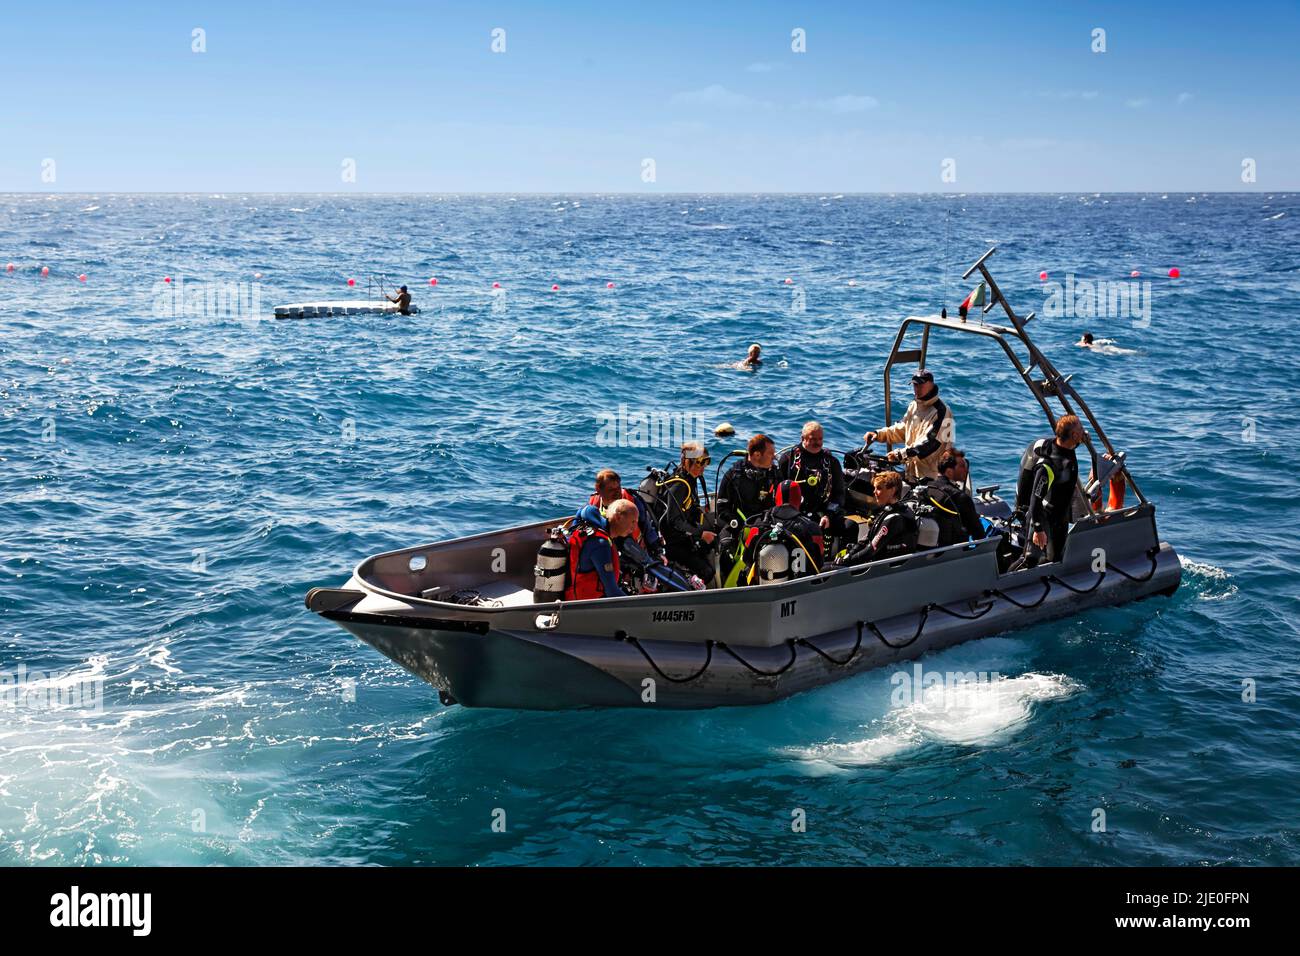 Plongeurs assis dans un bateau aluminim, bateau de plongée, bateau, bateau à moteur, océan Atlantique, Canico de Baixo, Madère, région officiellement autonome de Madère Banque D'Images